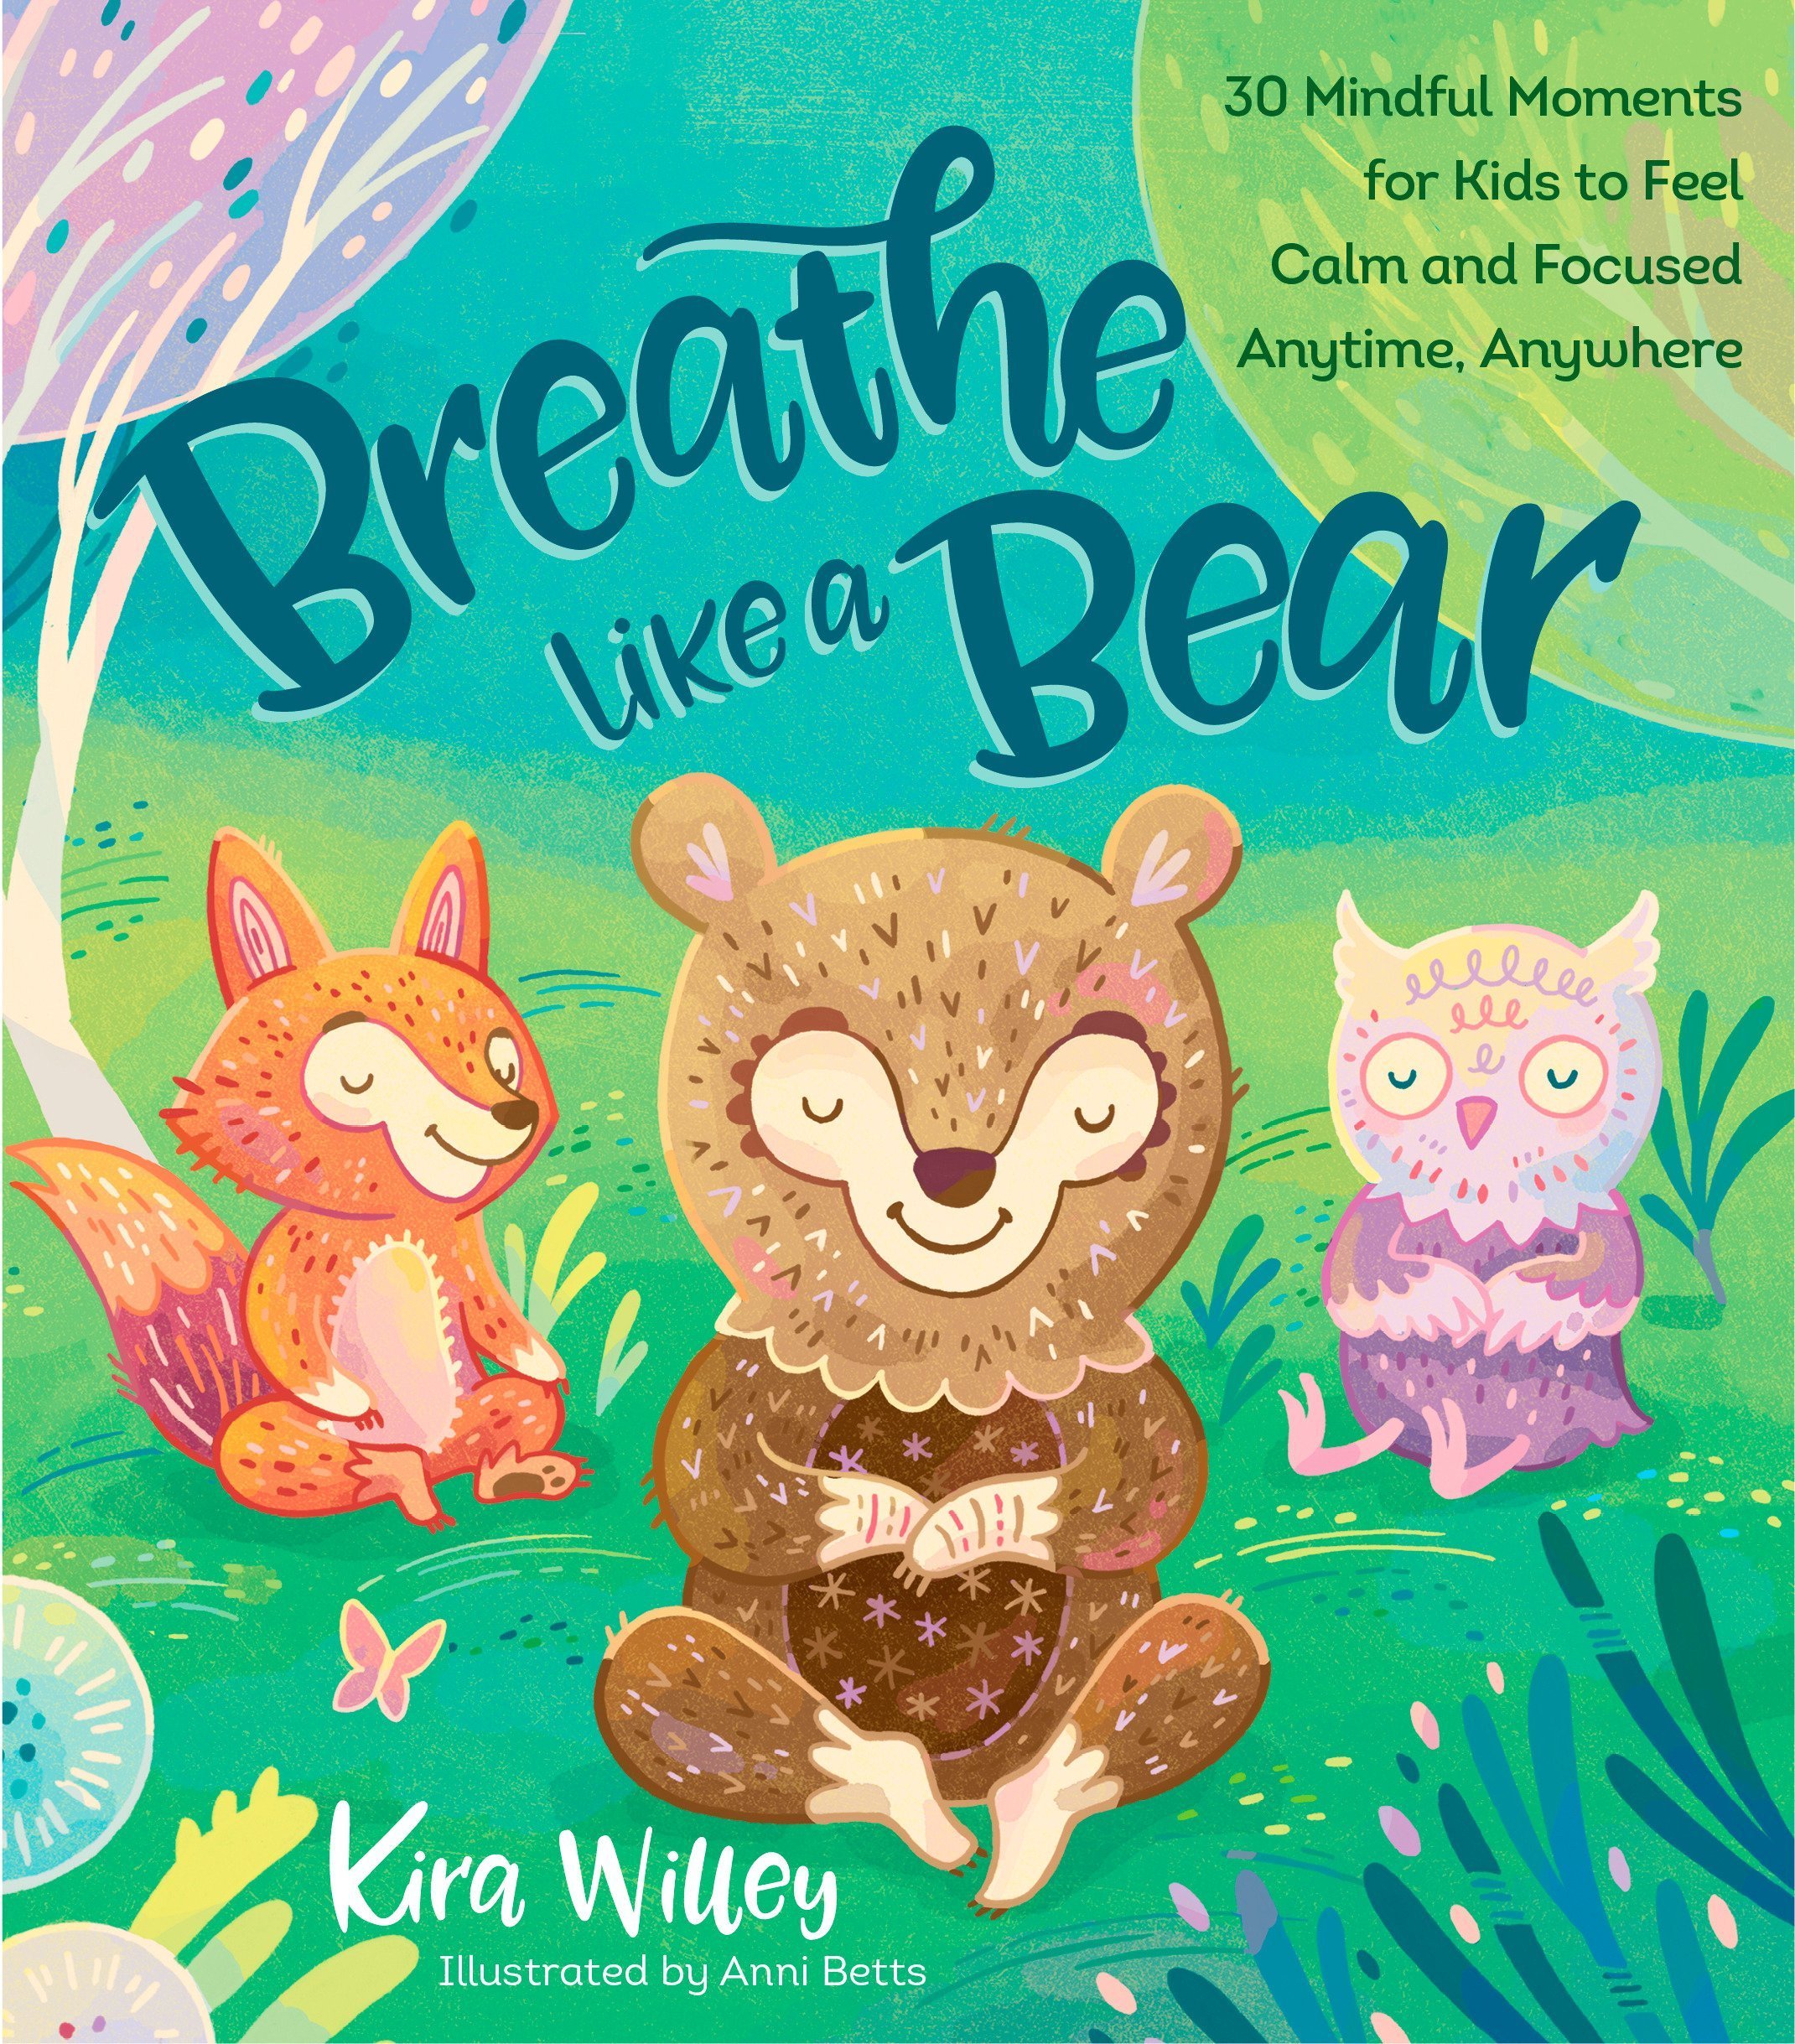 breathe like a bear mindfulness book